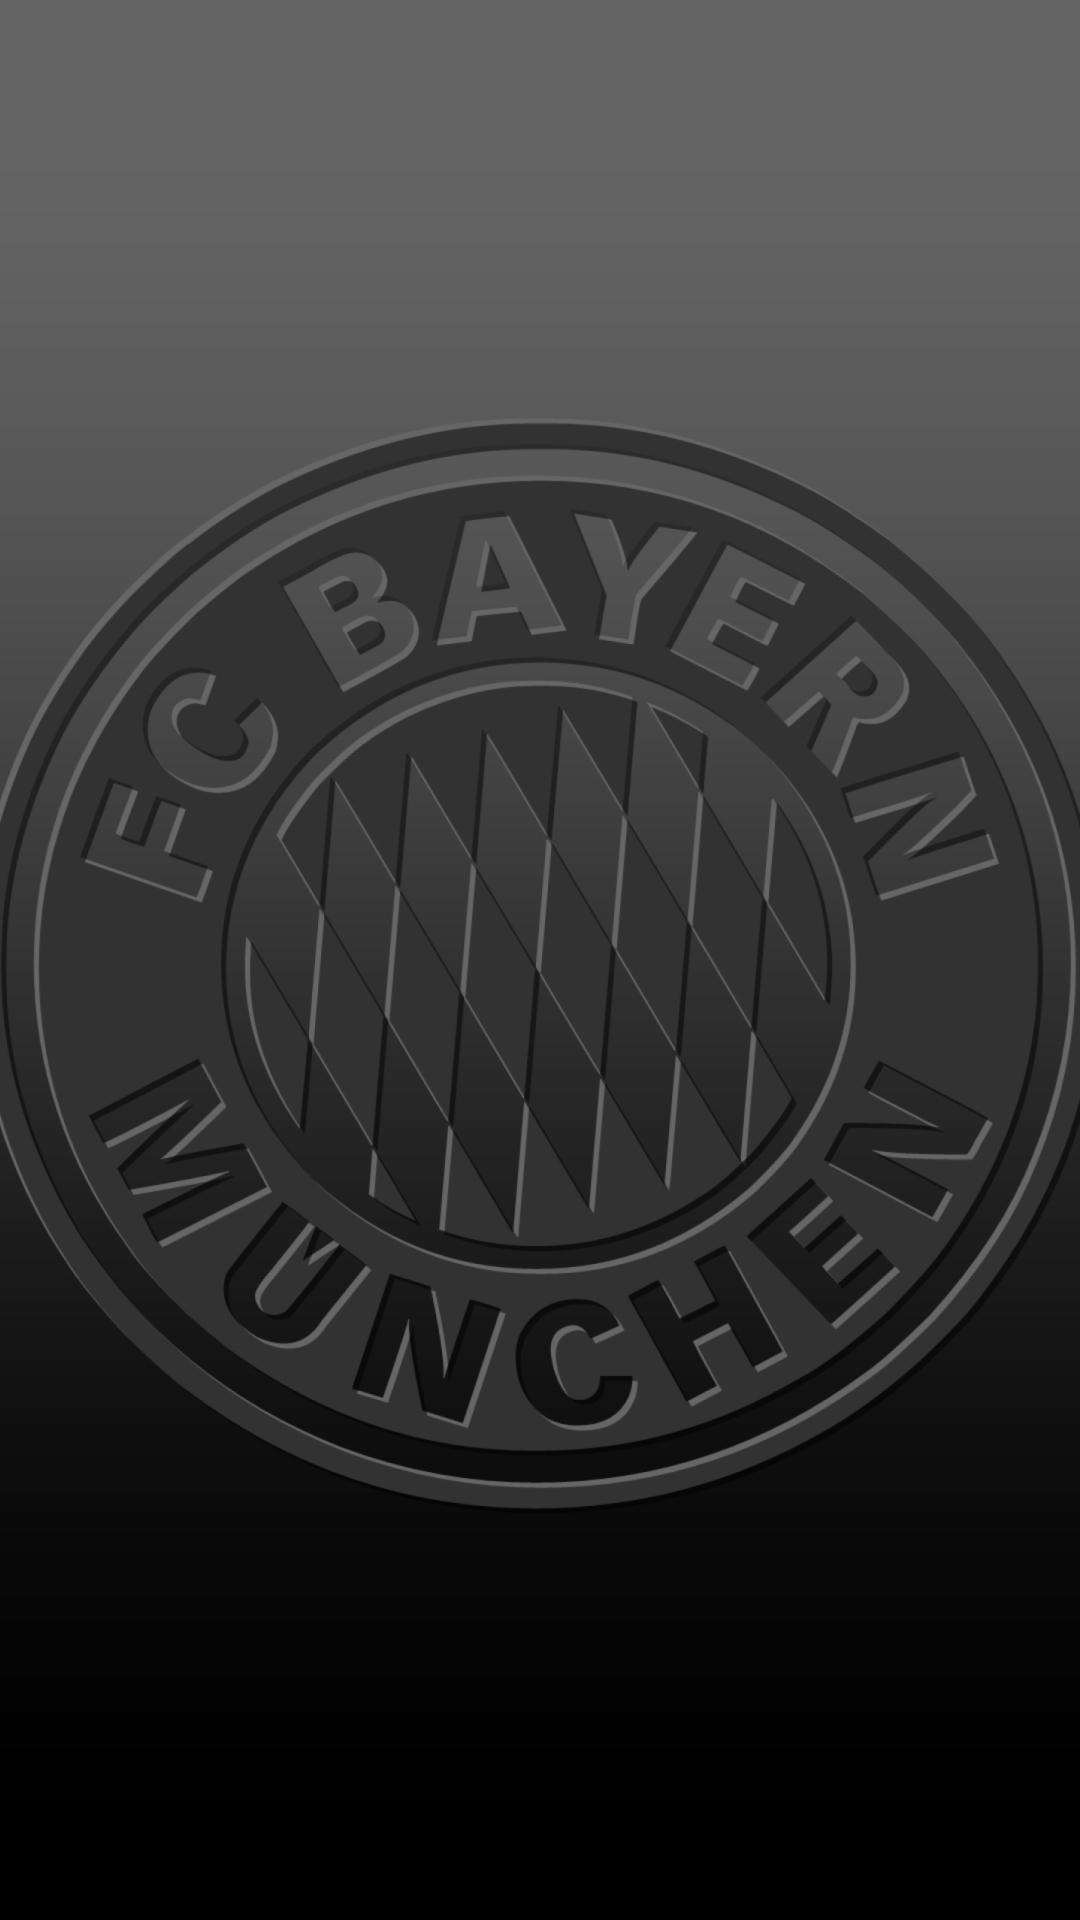 Das FC Bayern Munchen Wallpaper 1080x1920